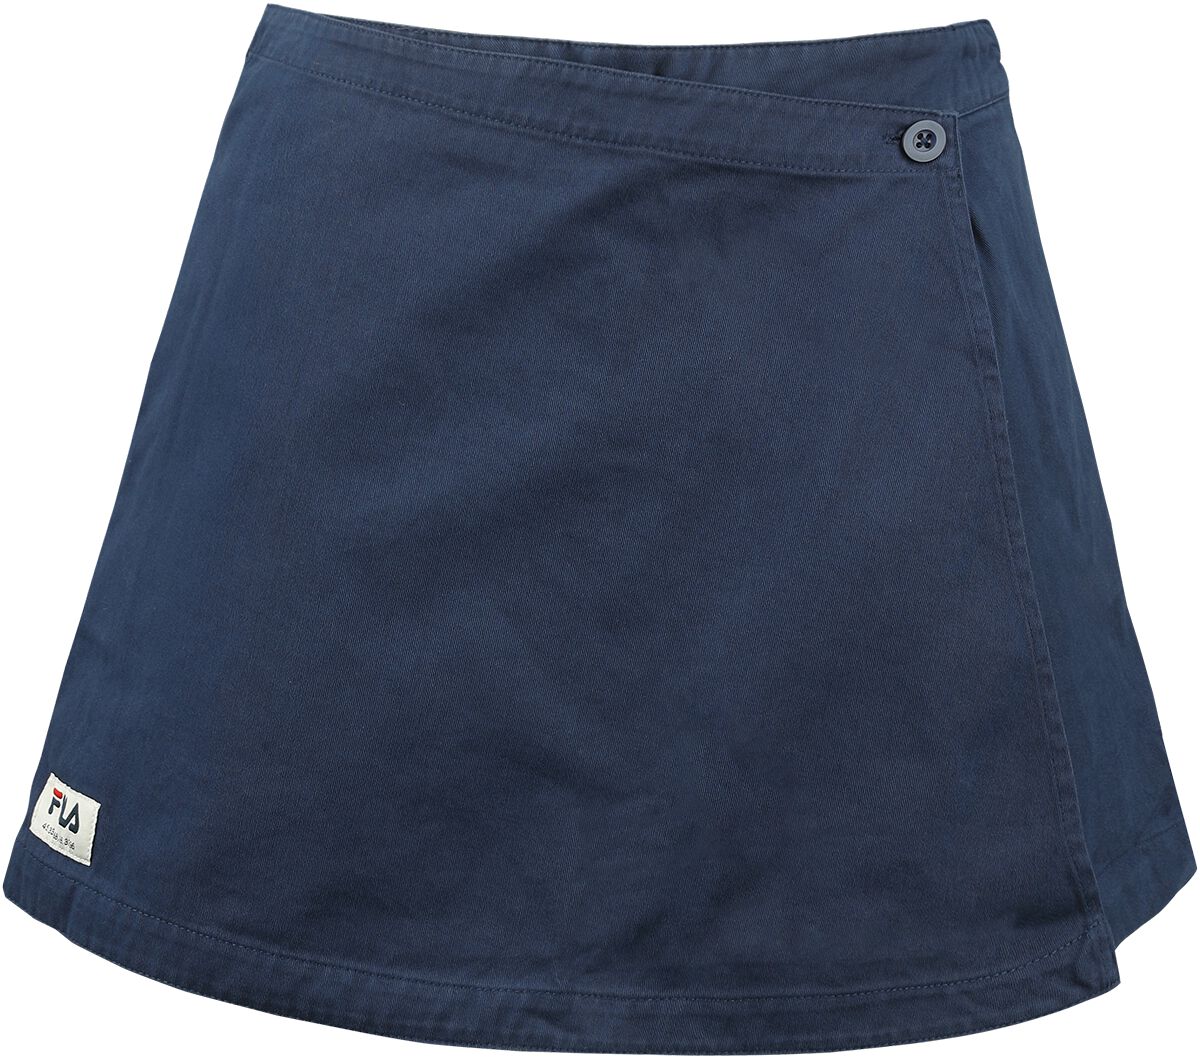 Short de Fila - TEGAU skirt shorts - XS à XL - pour Femme - bleu foncé